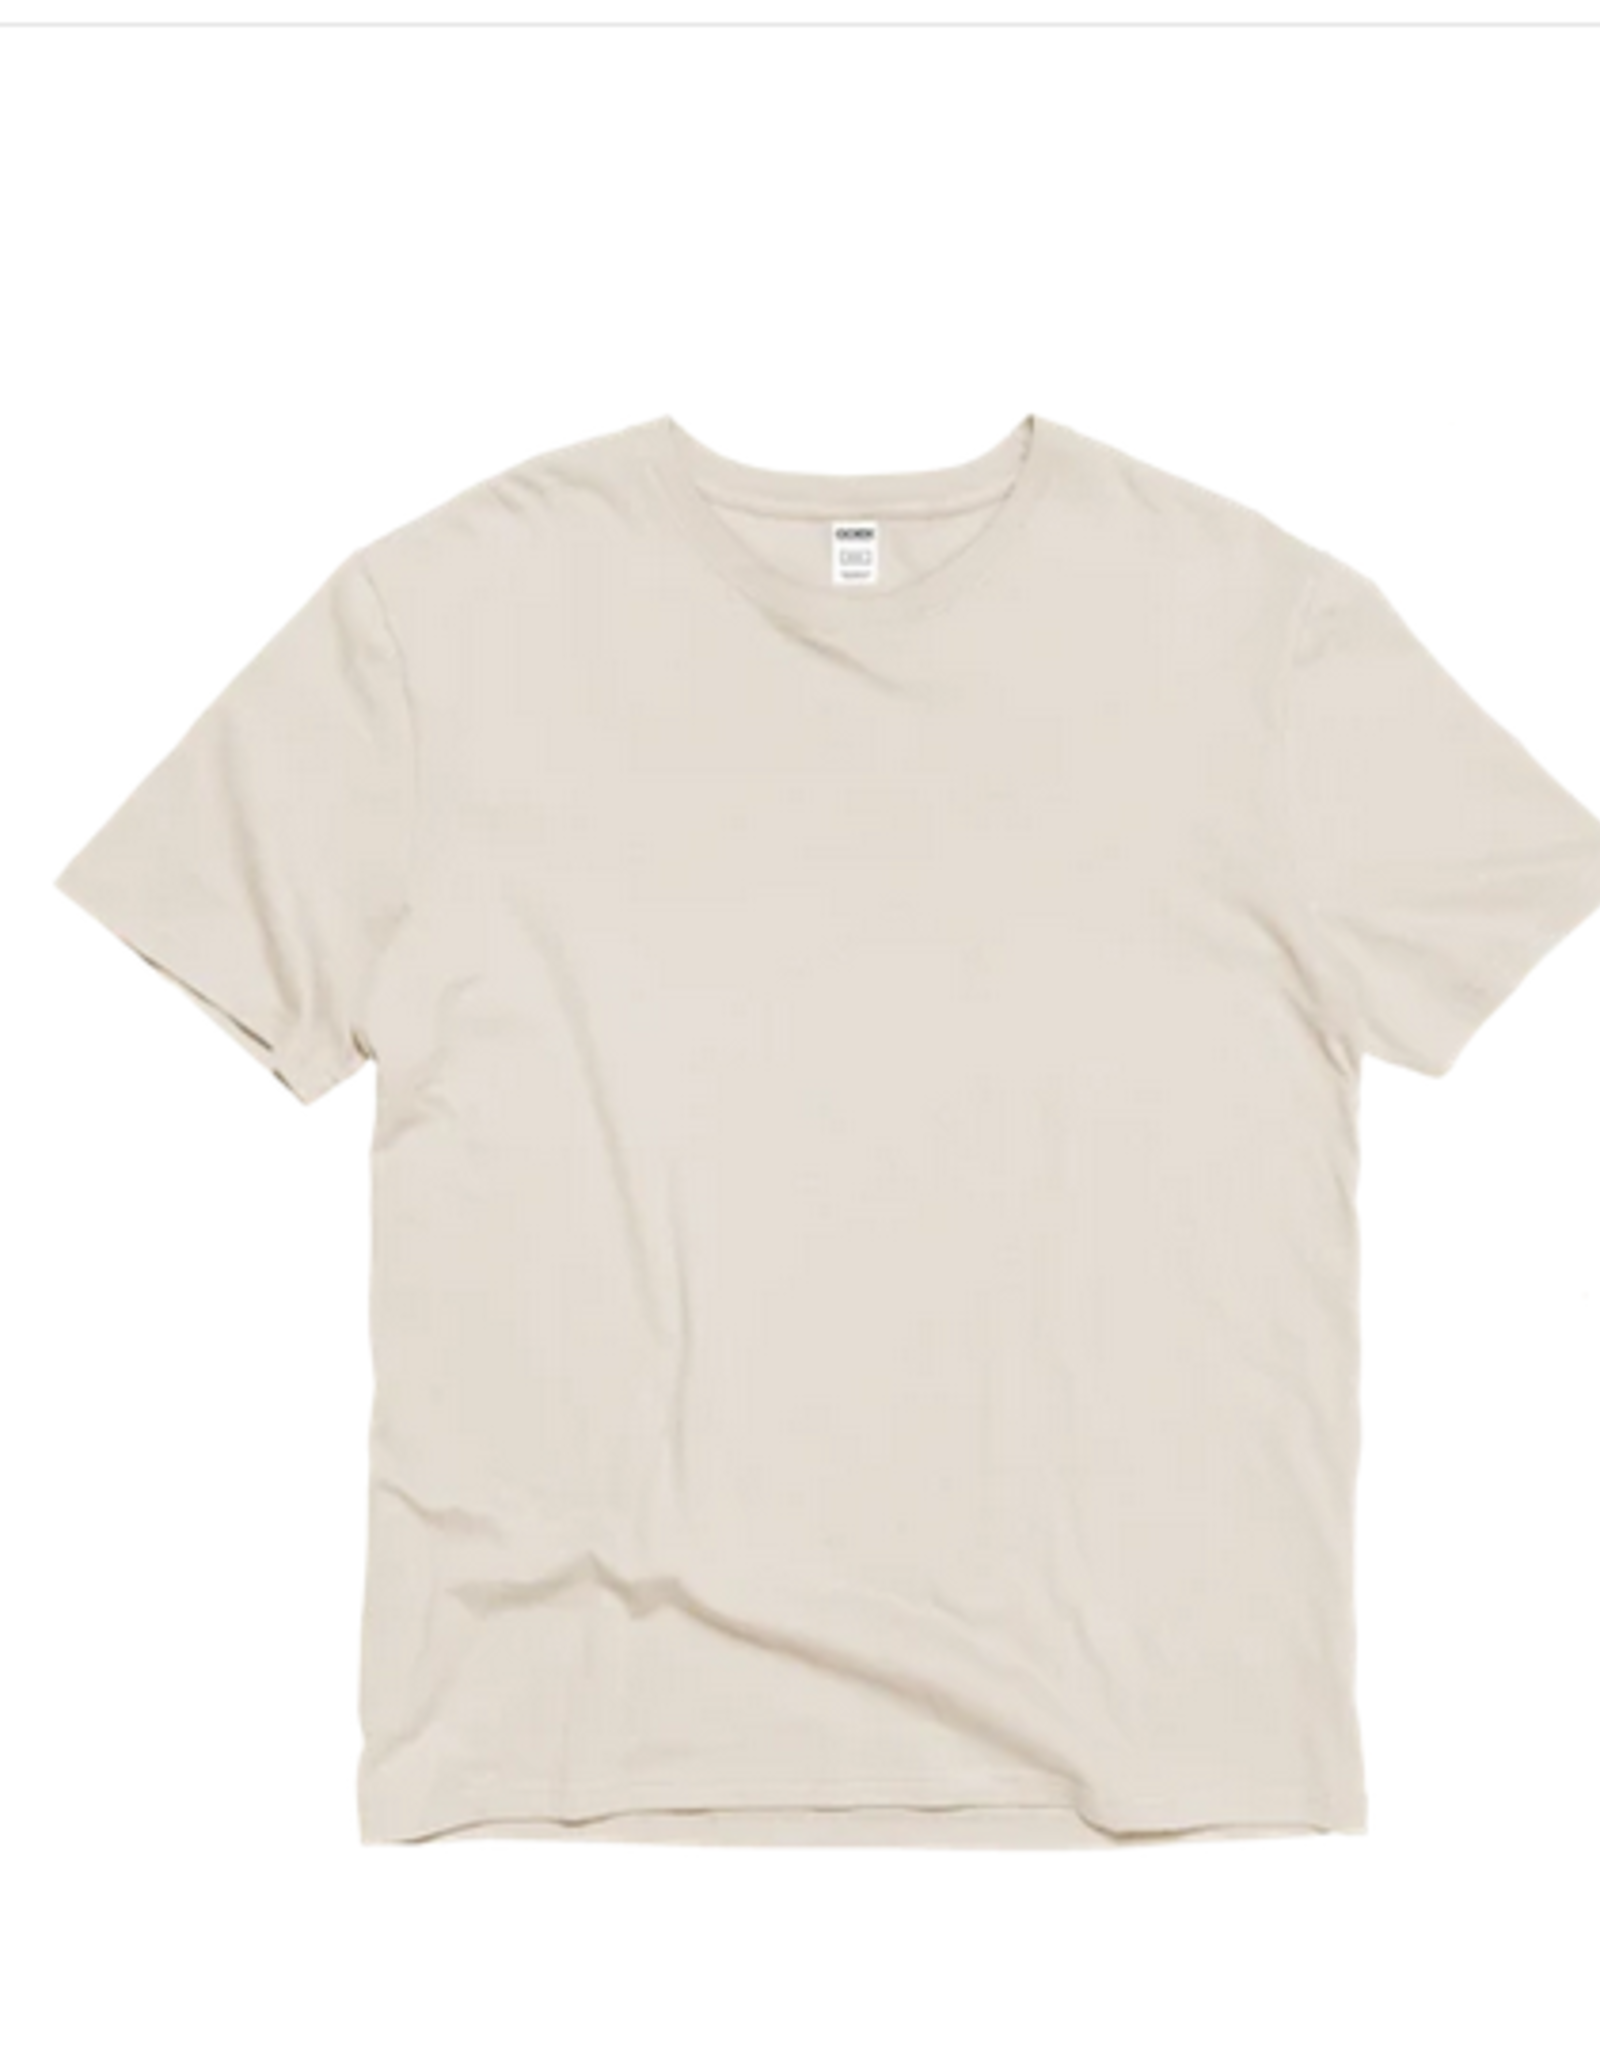 Haiti T-Shirt Unisex White Cotton Short Sleeve (L) - Haiti/USA